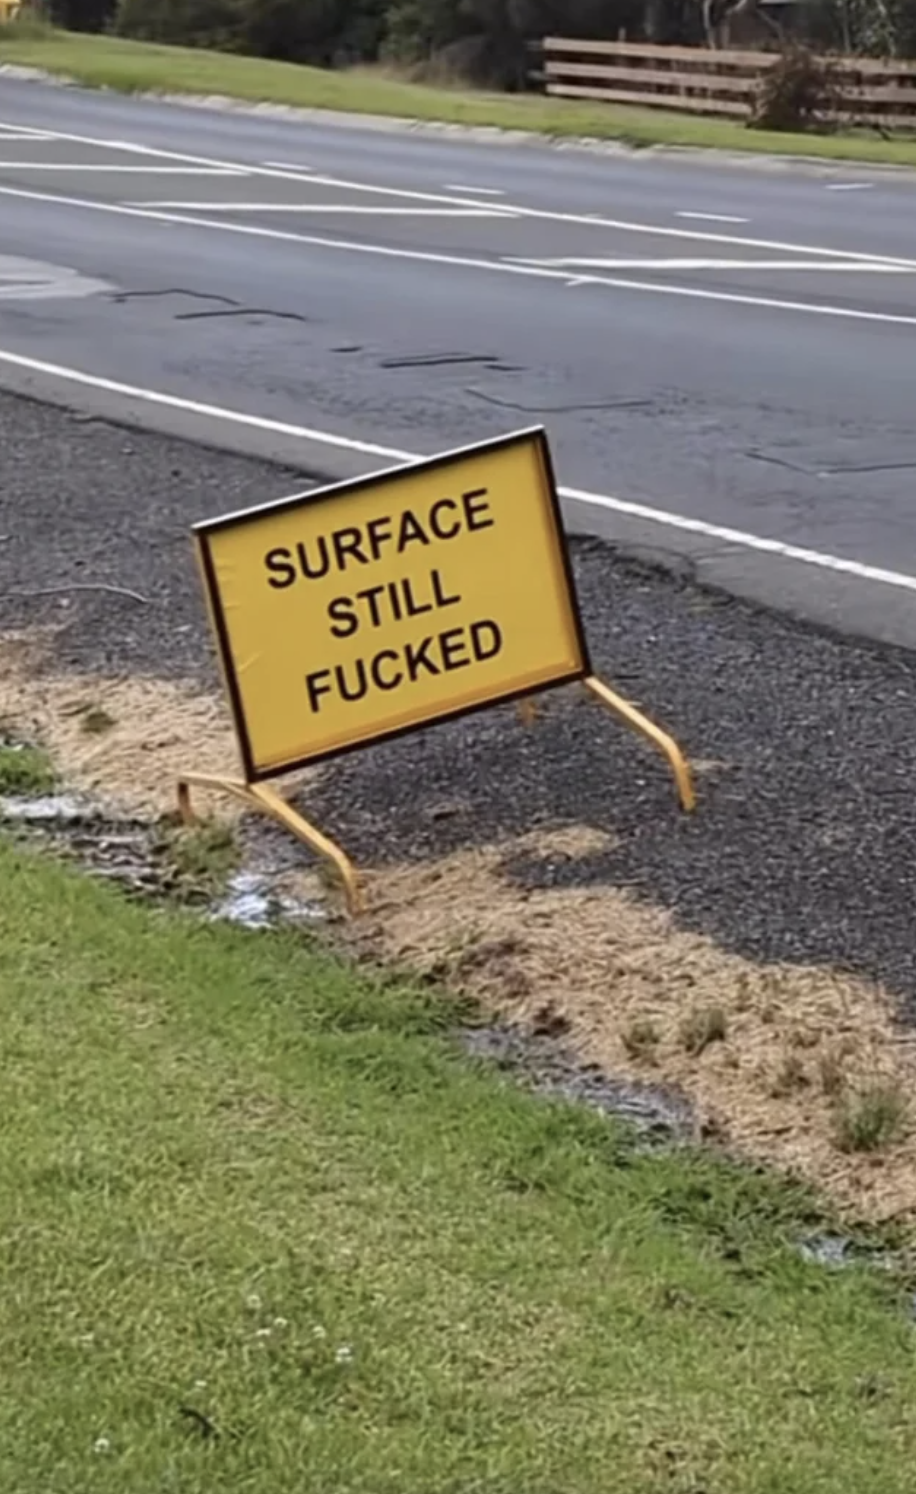 "Surface still fucked"